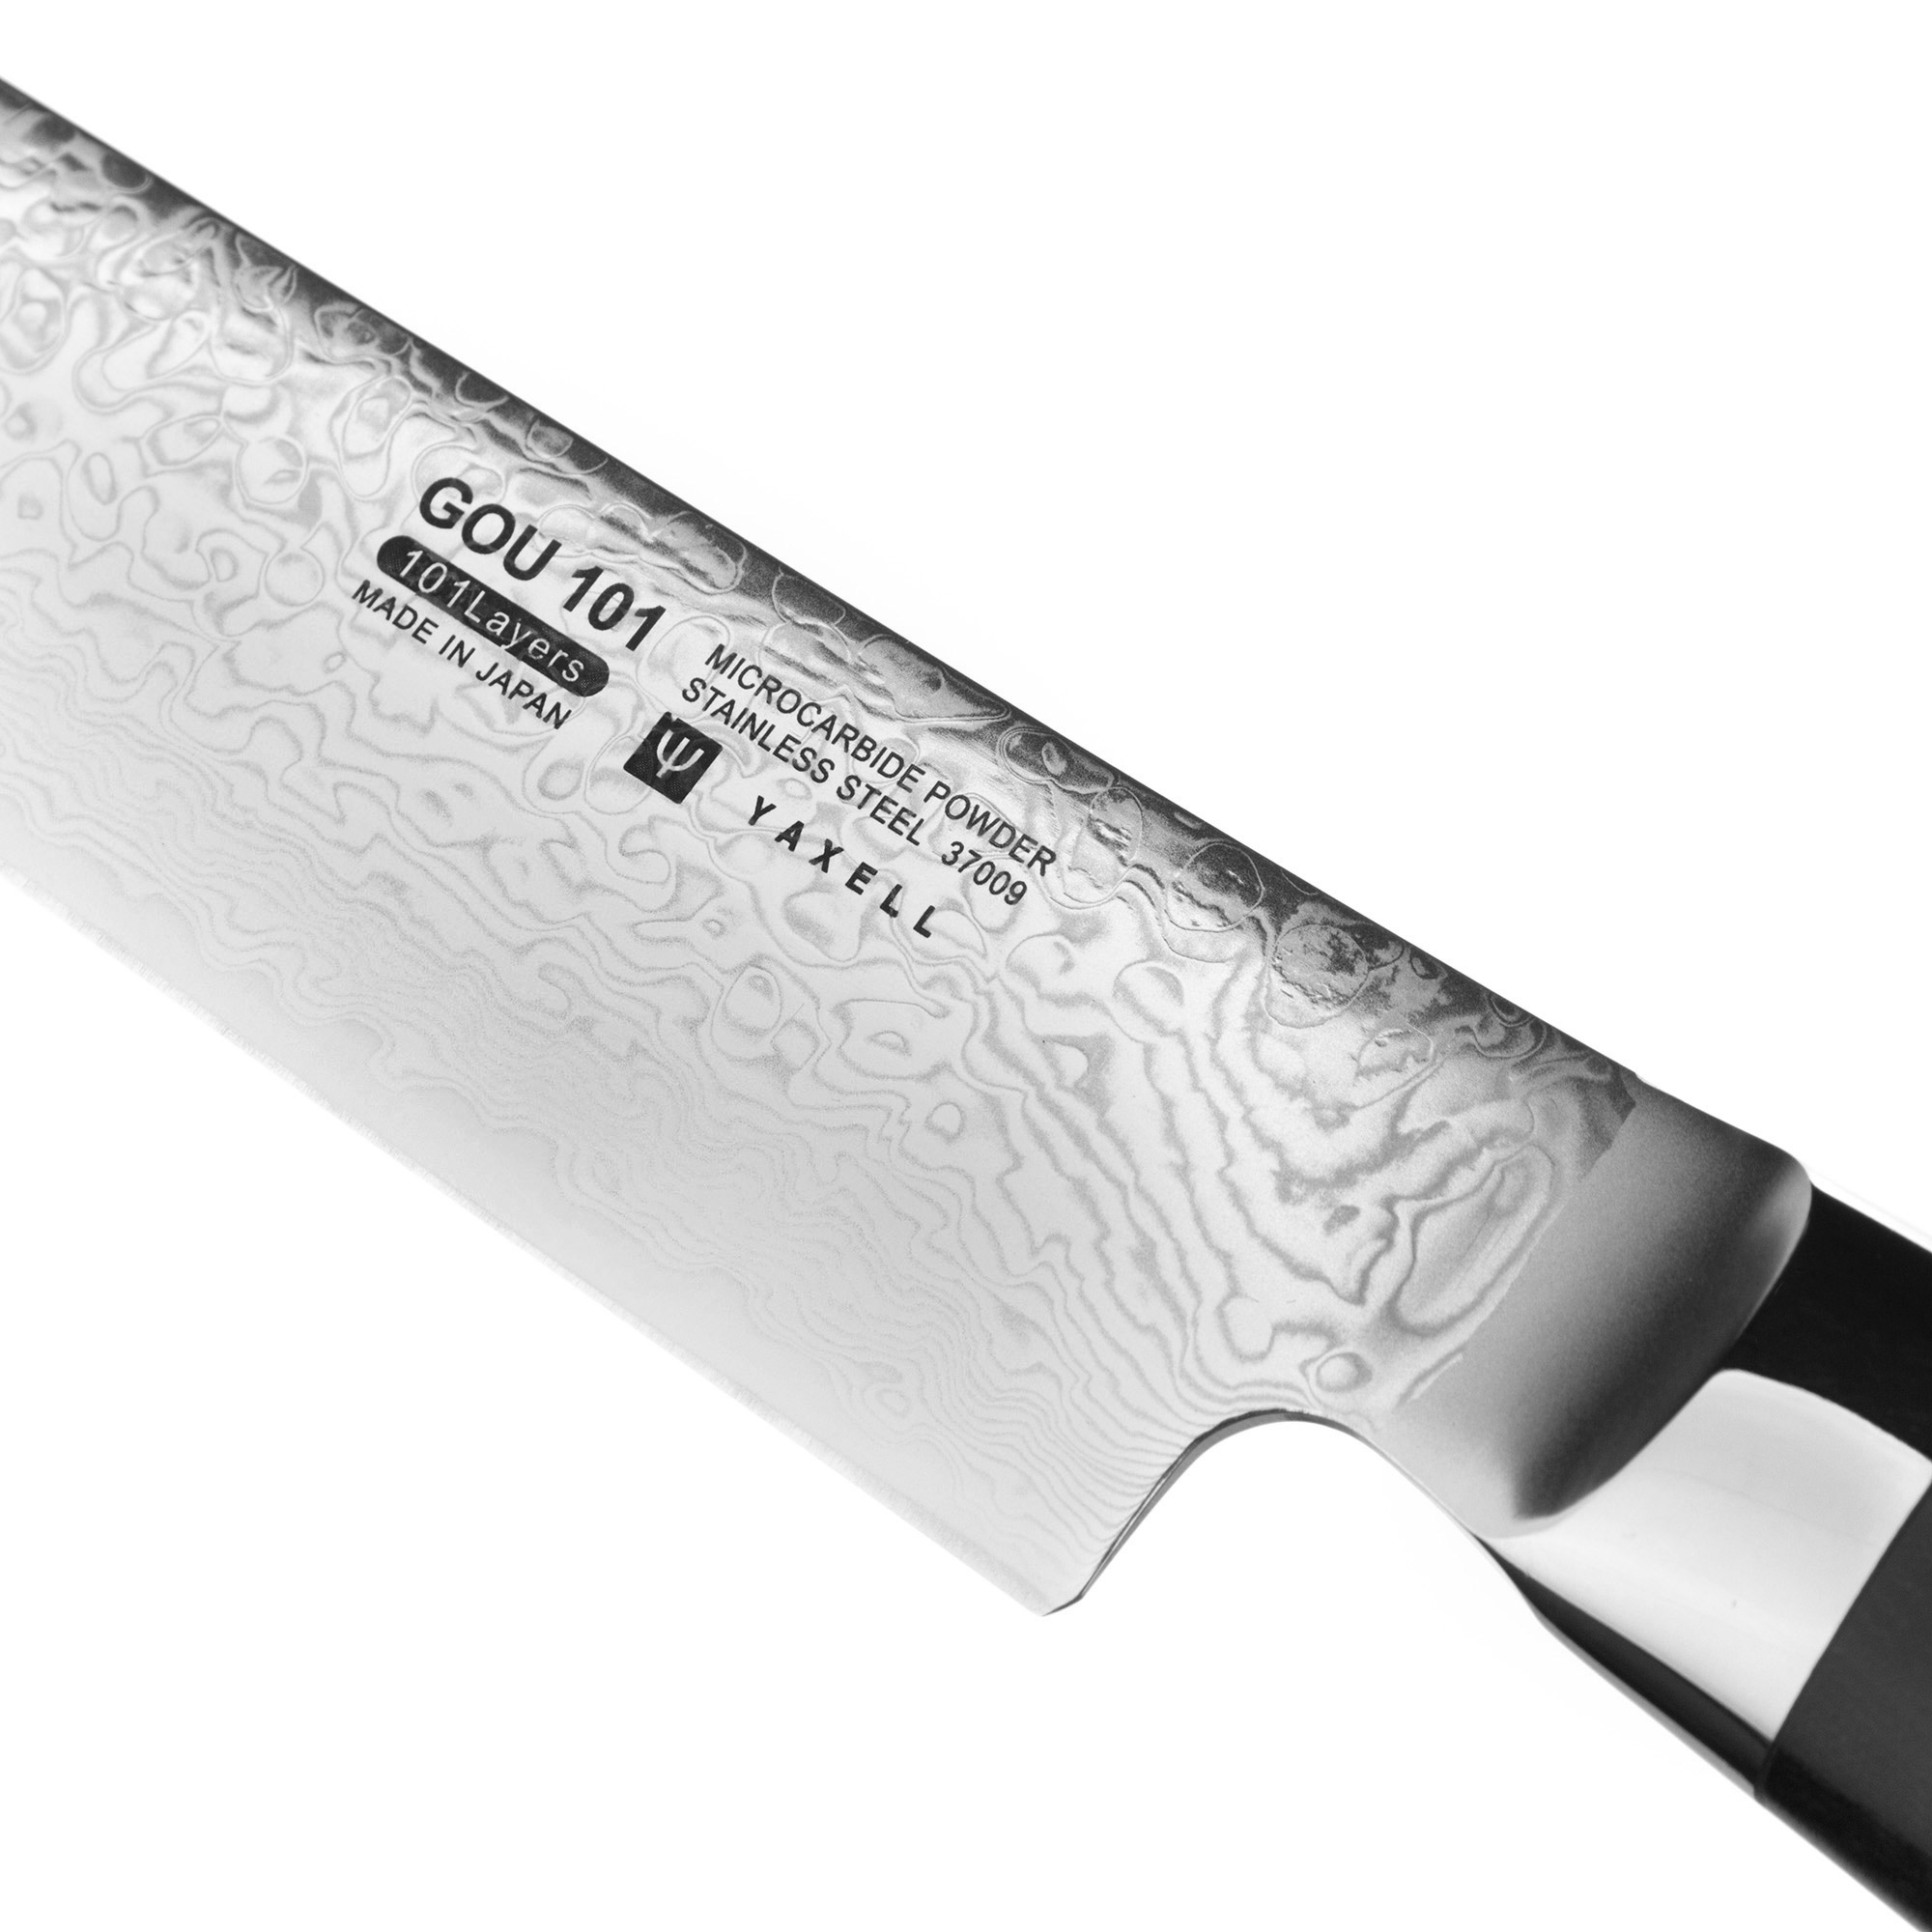 Нож для нарезки Yaxell Gou YA37009, цвет серебристый - фото 3